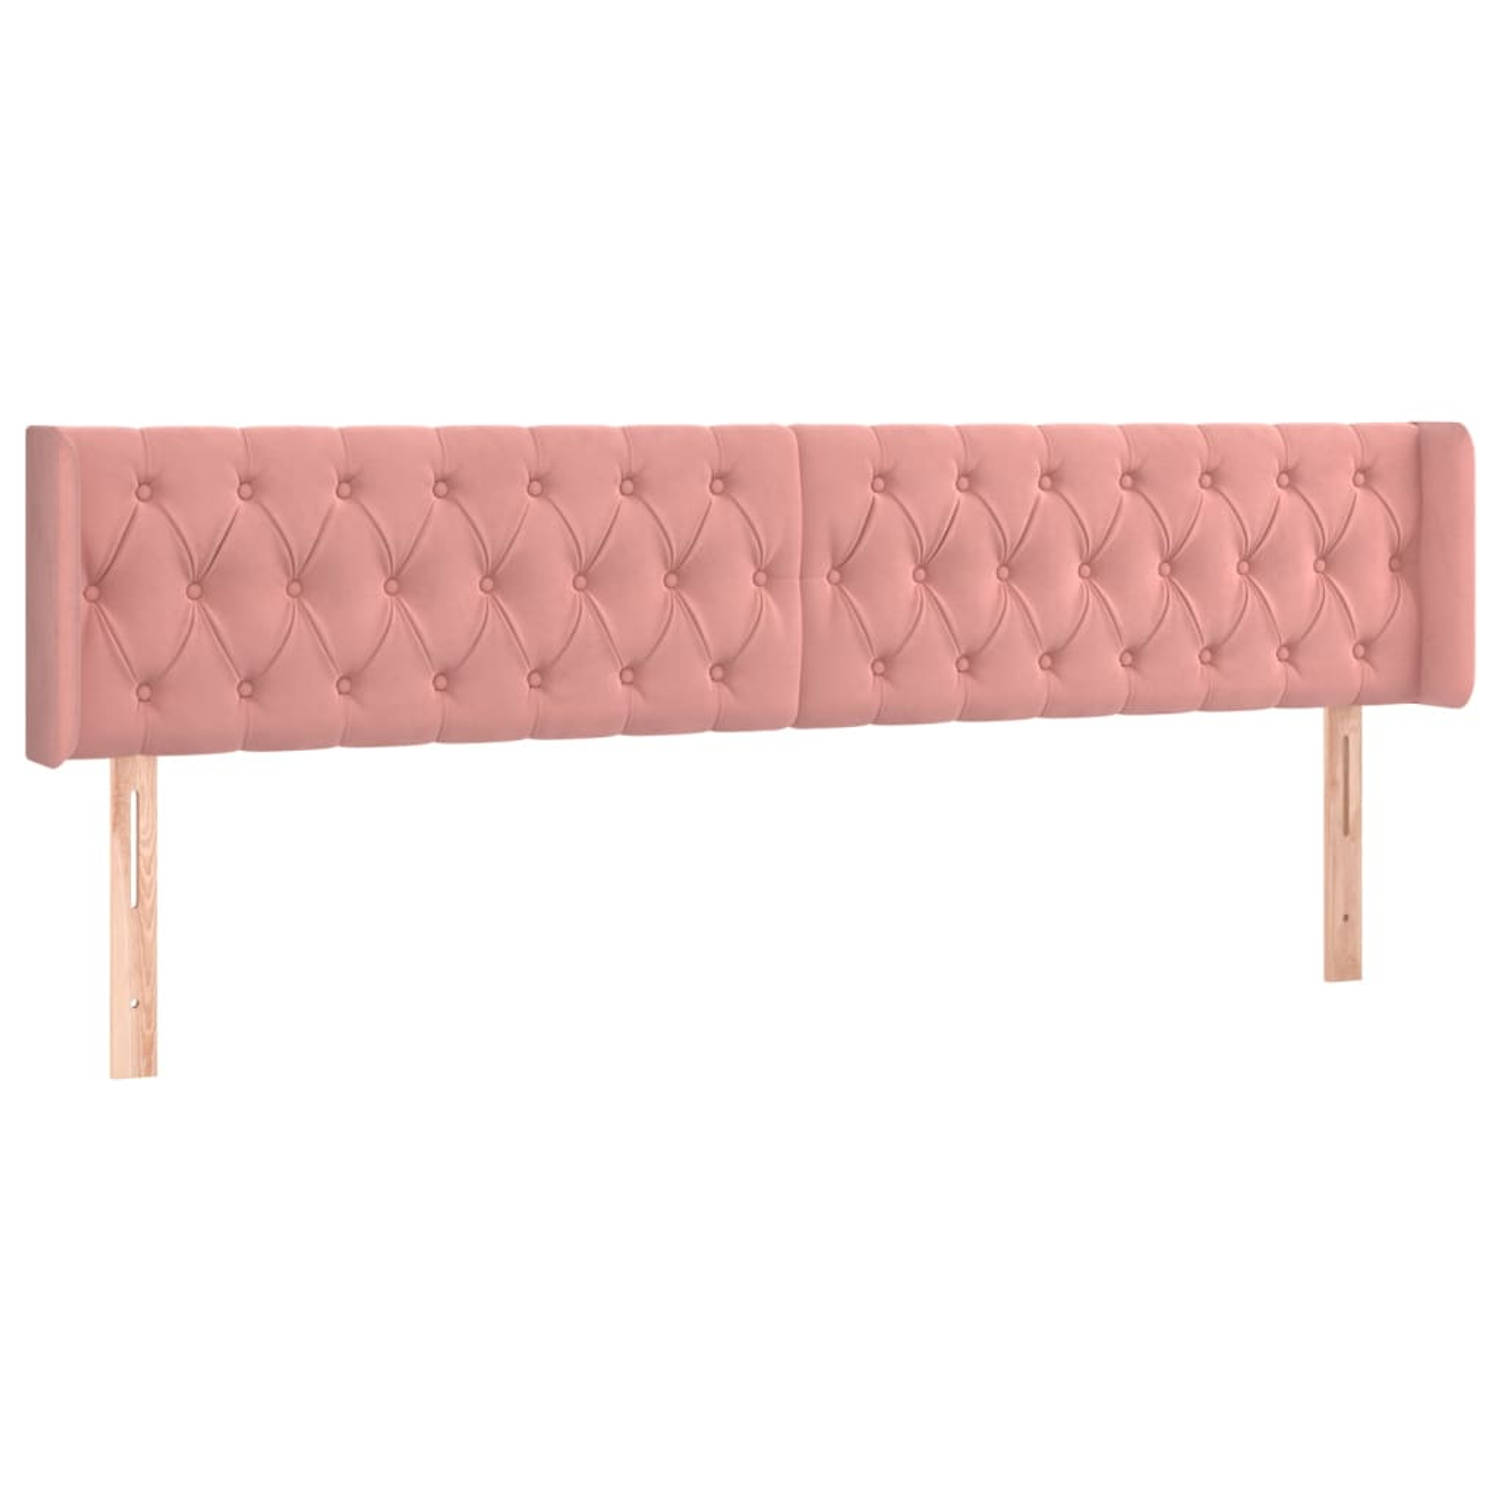 The Living Store Hoofdbord - Hoofdeind met verstelbare hoogte - Comfortabele ondersteuning - Zacht fluweel - Stevige poten - 203 x 16 x 78/88 cm roze - 100% polyester